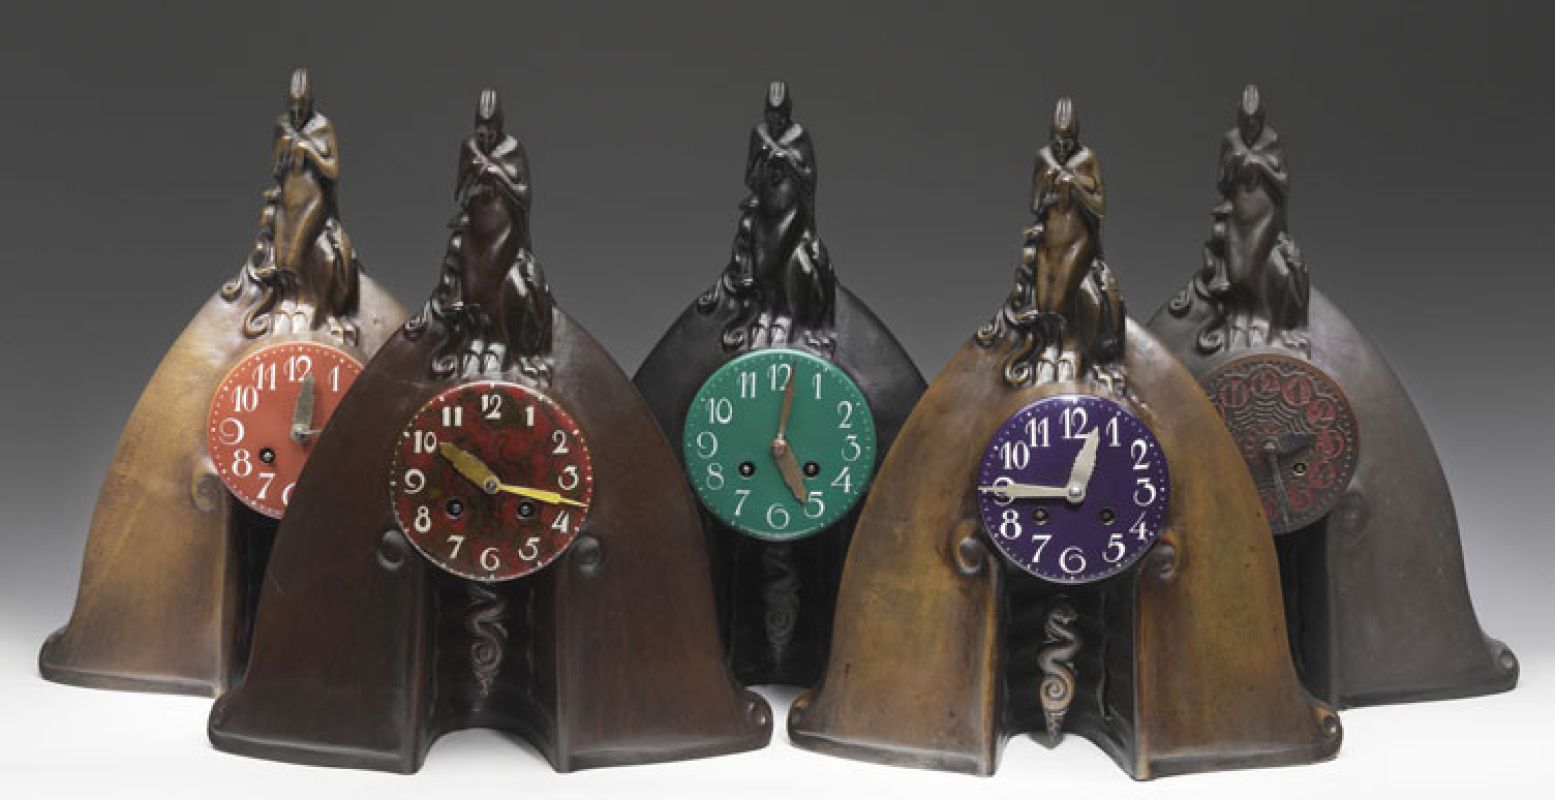 Klokken uit 1921 in het Stedelijk Museum Amsterdam. Foto: Erik & Petra Hesmerg.